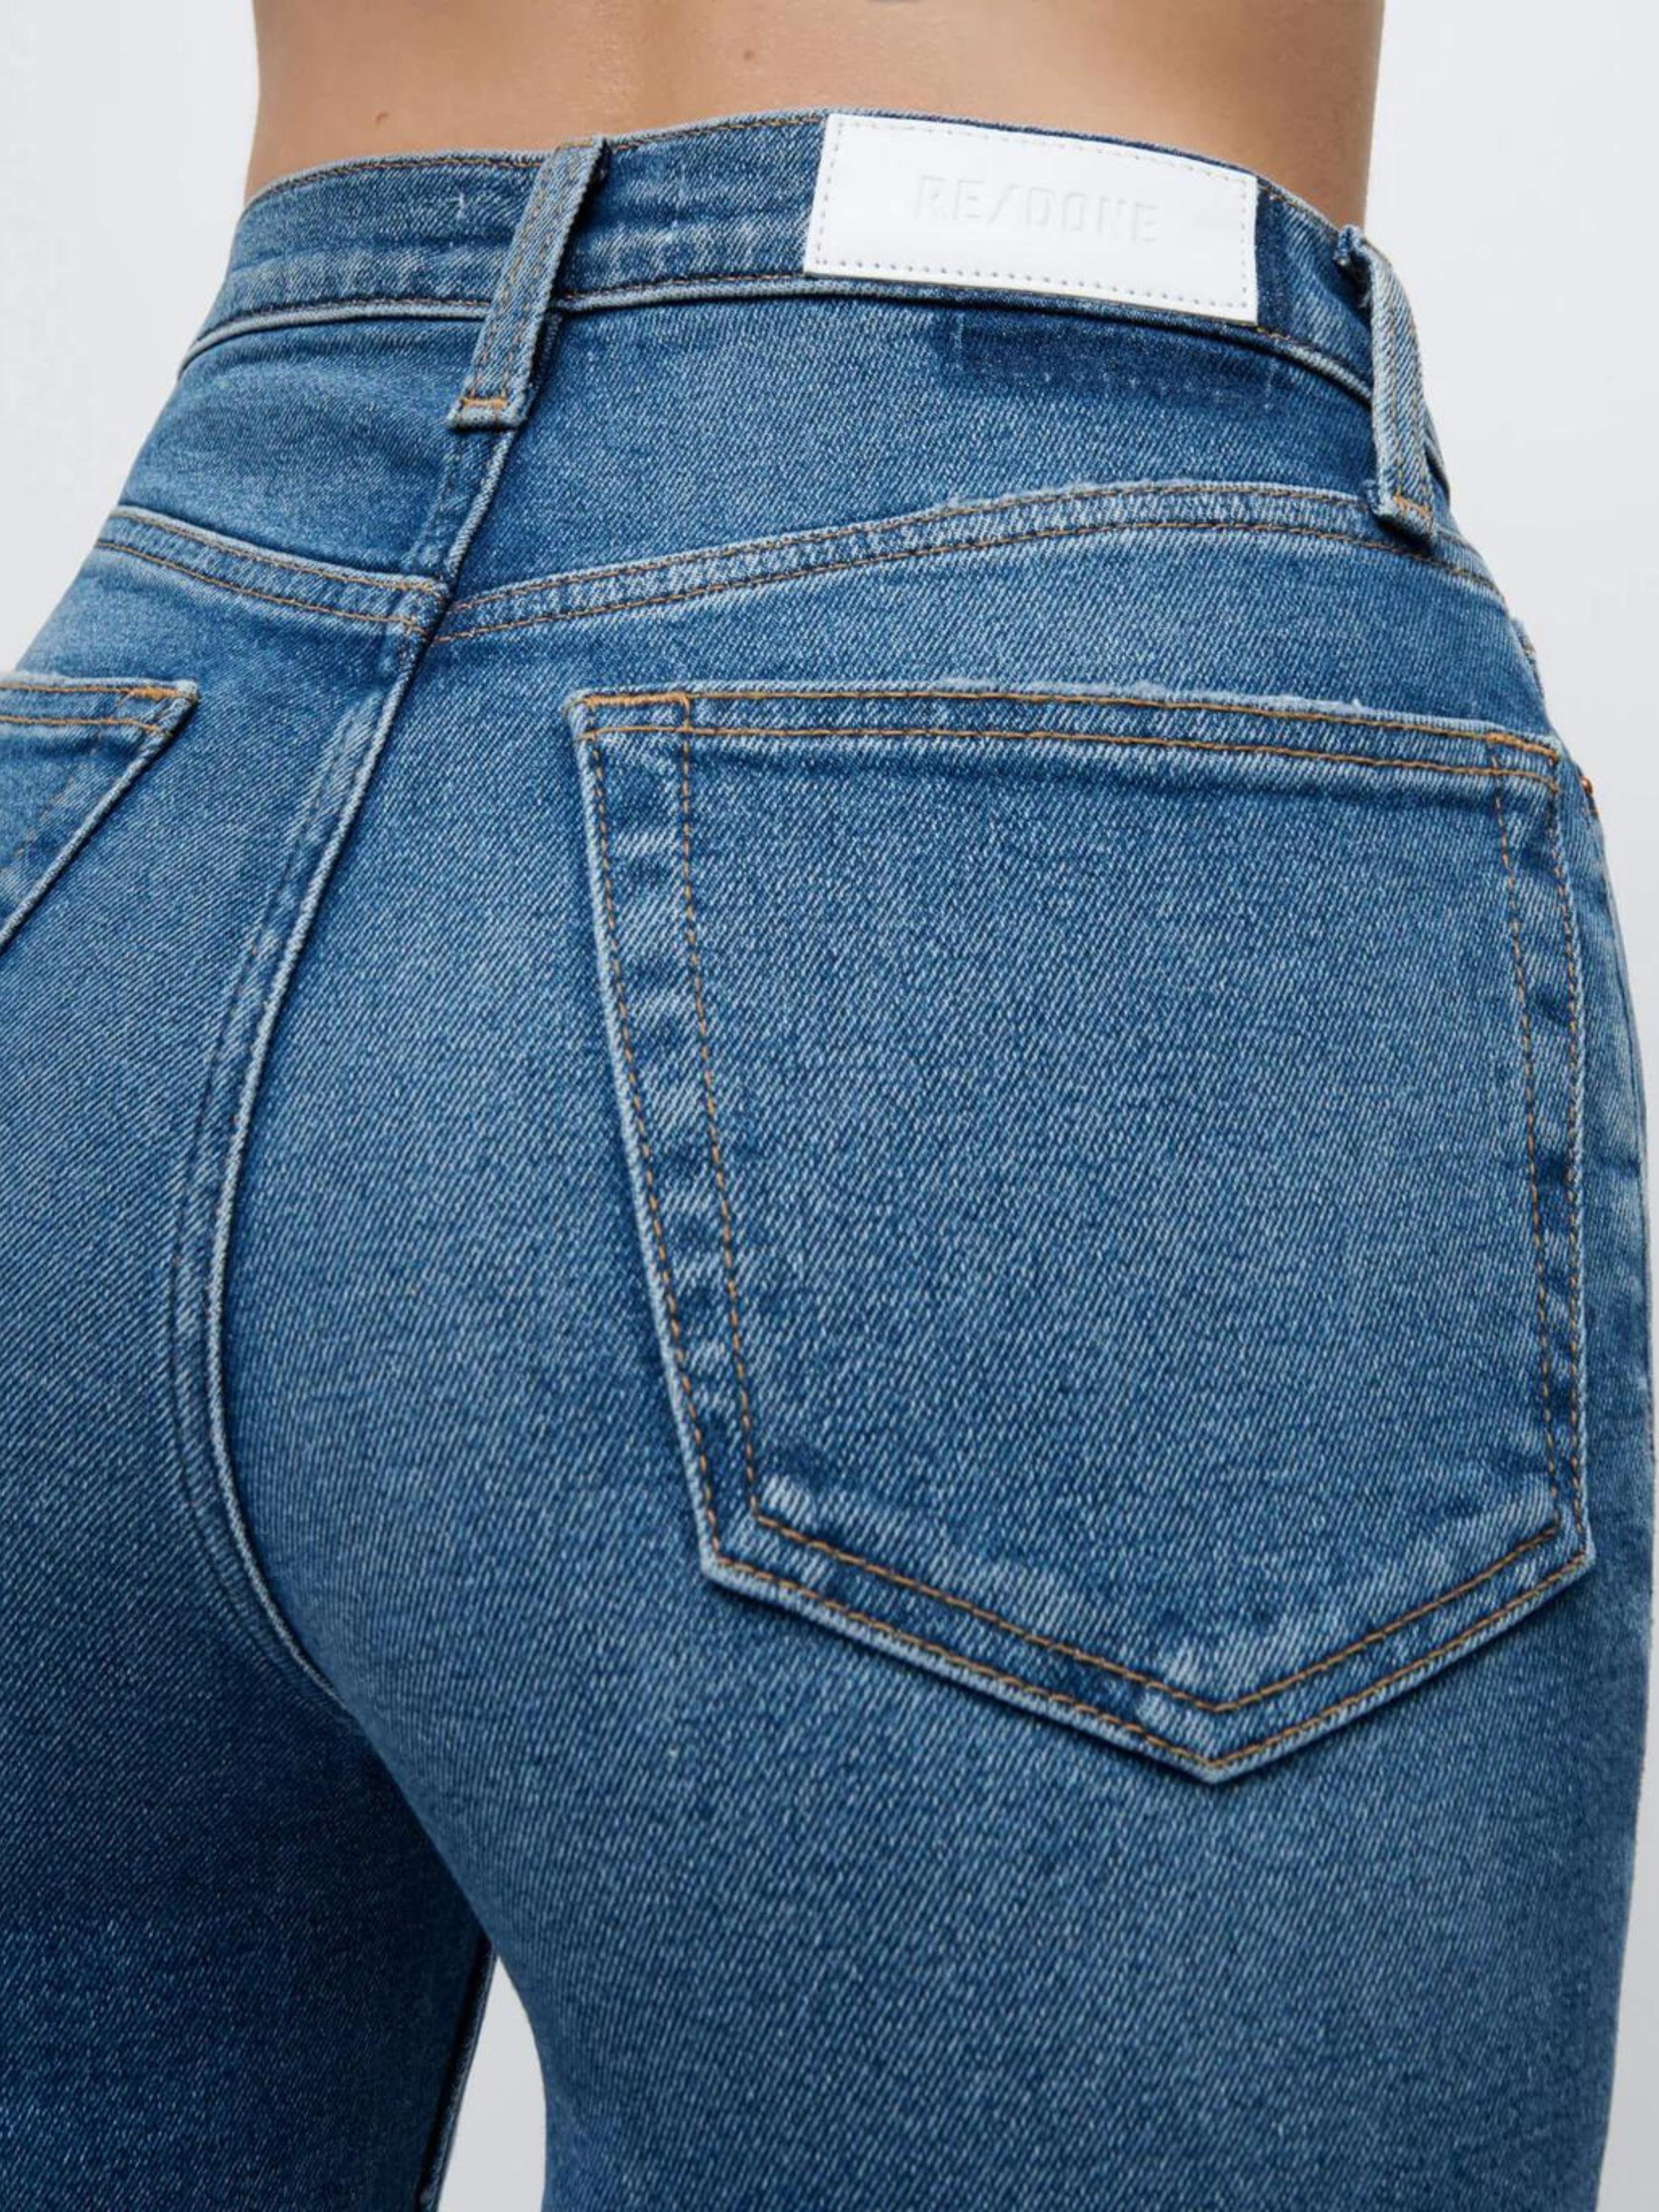 JEAN 70S STOVE PIPE Coton RE/DONE en coloris Bleu Femme Vêtements Jeans Jeans coupe droite 